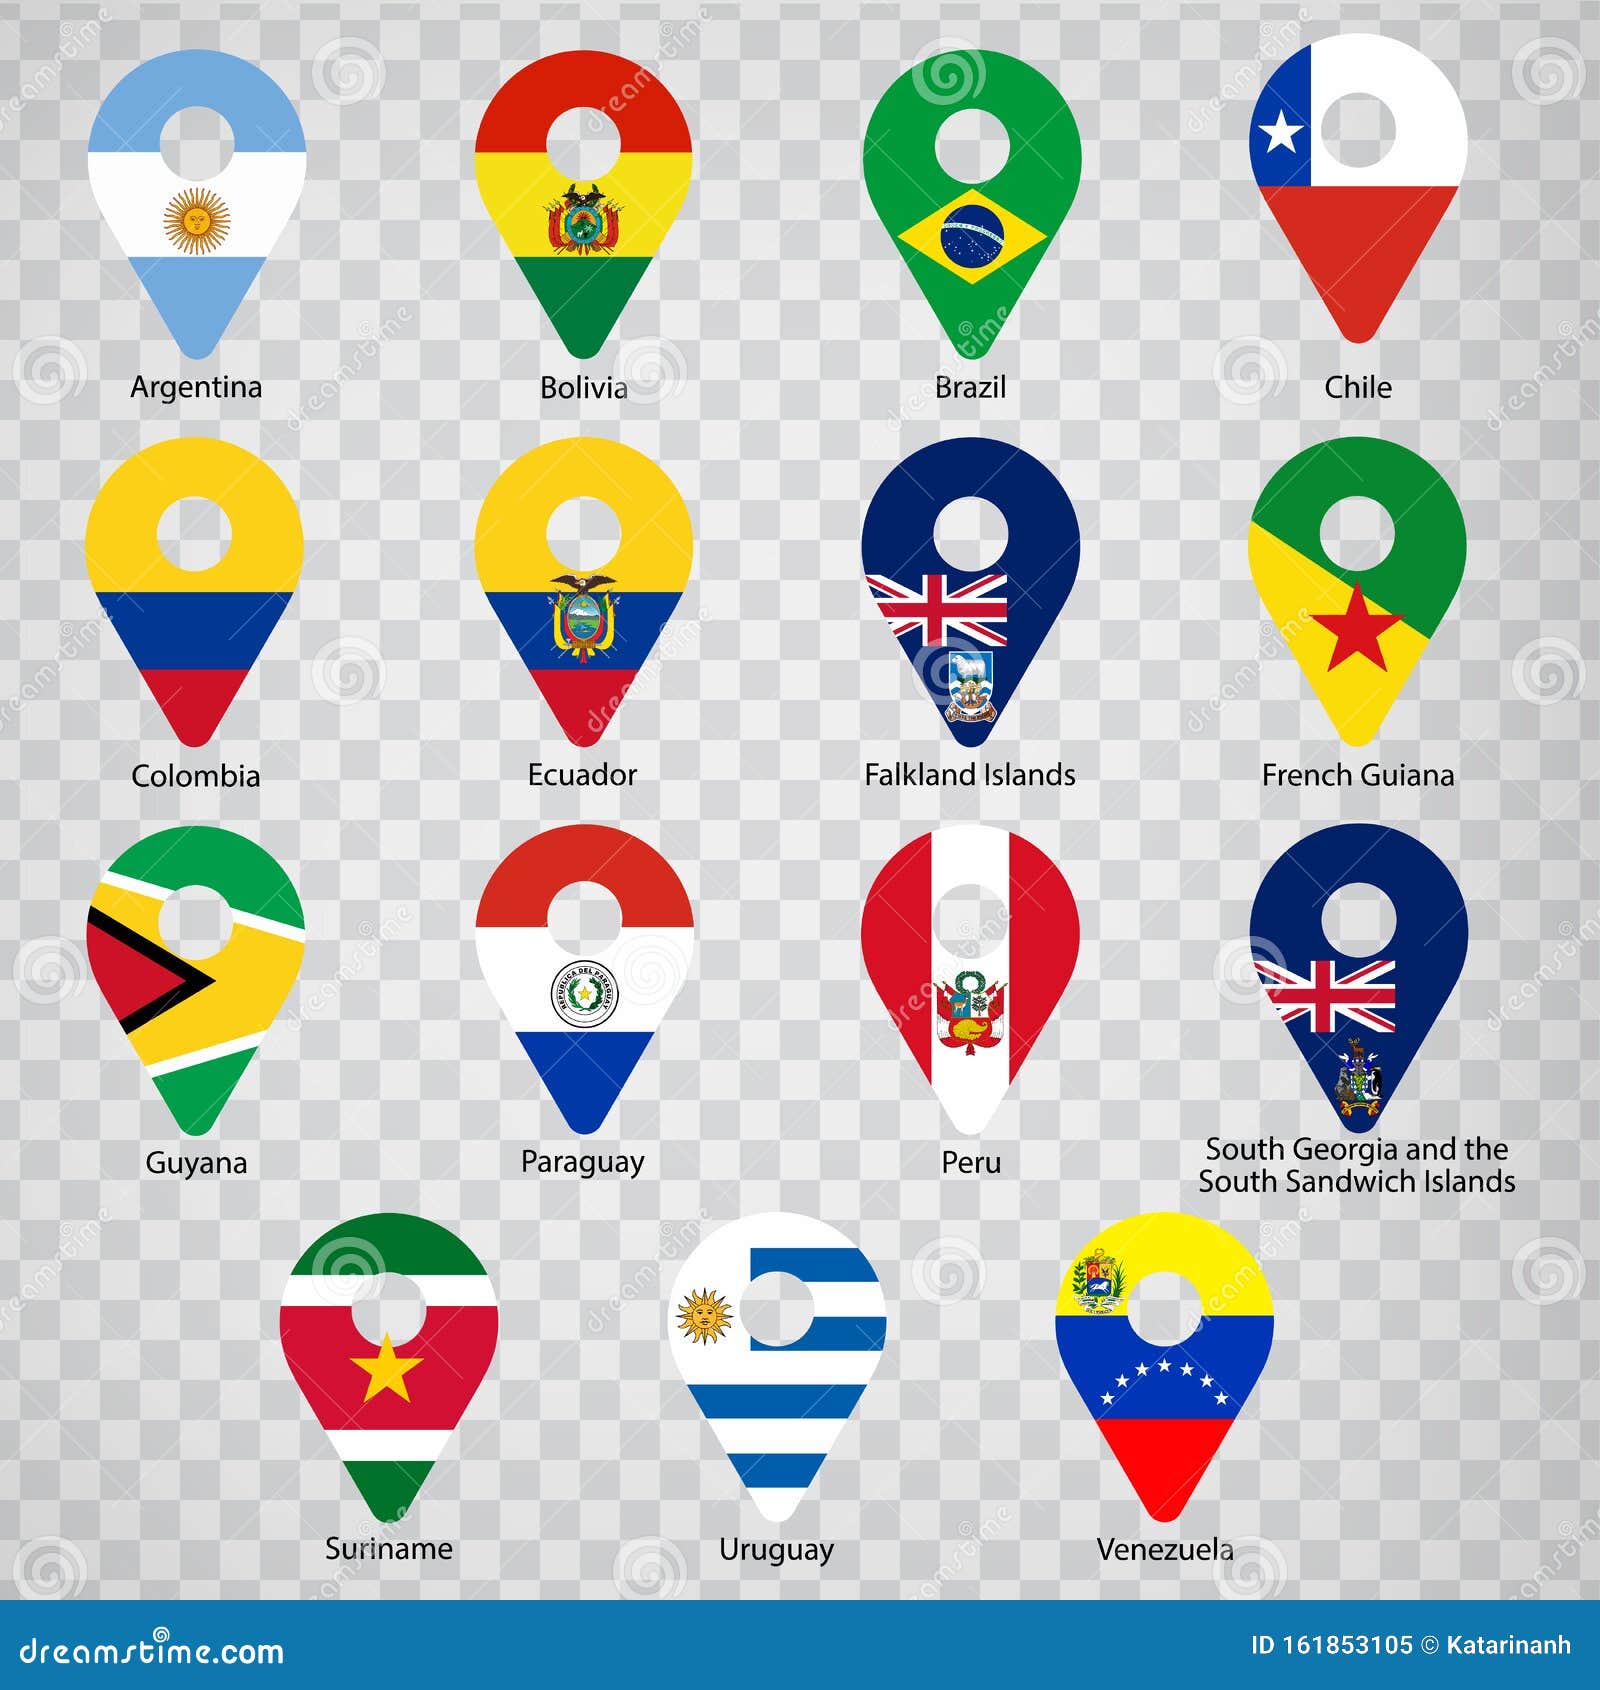 世界各国国旗一览表（世界各国国旗国徽大全） – 碳资讯